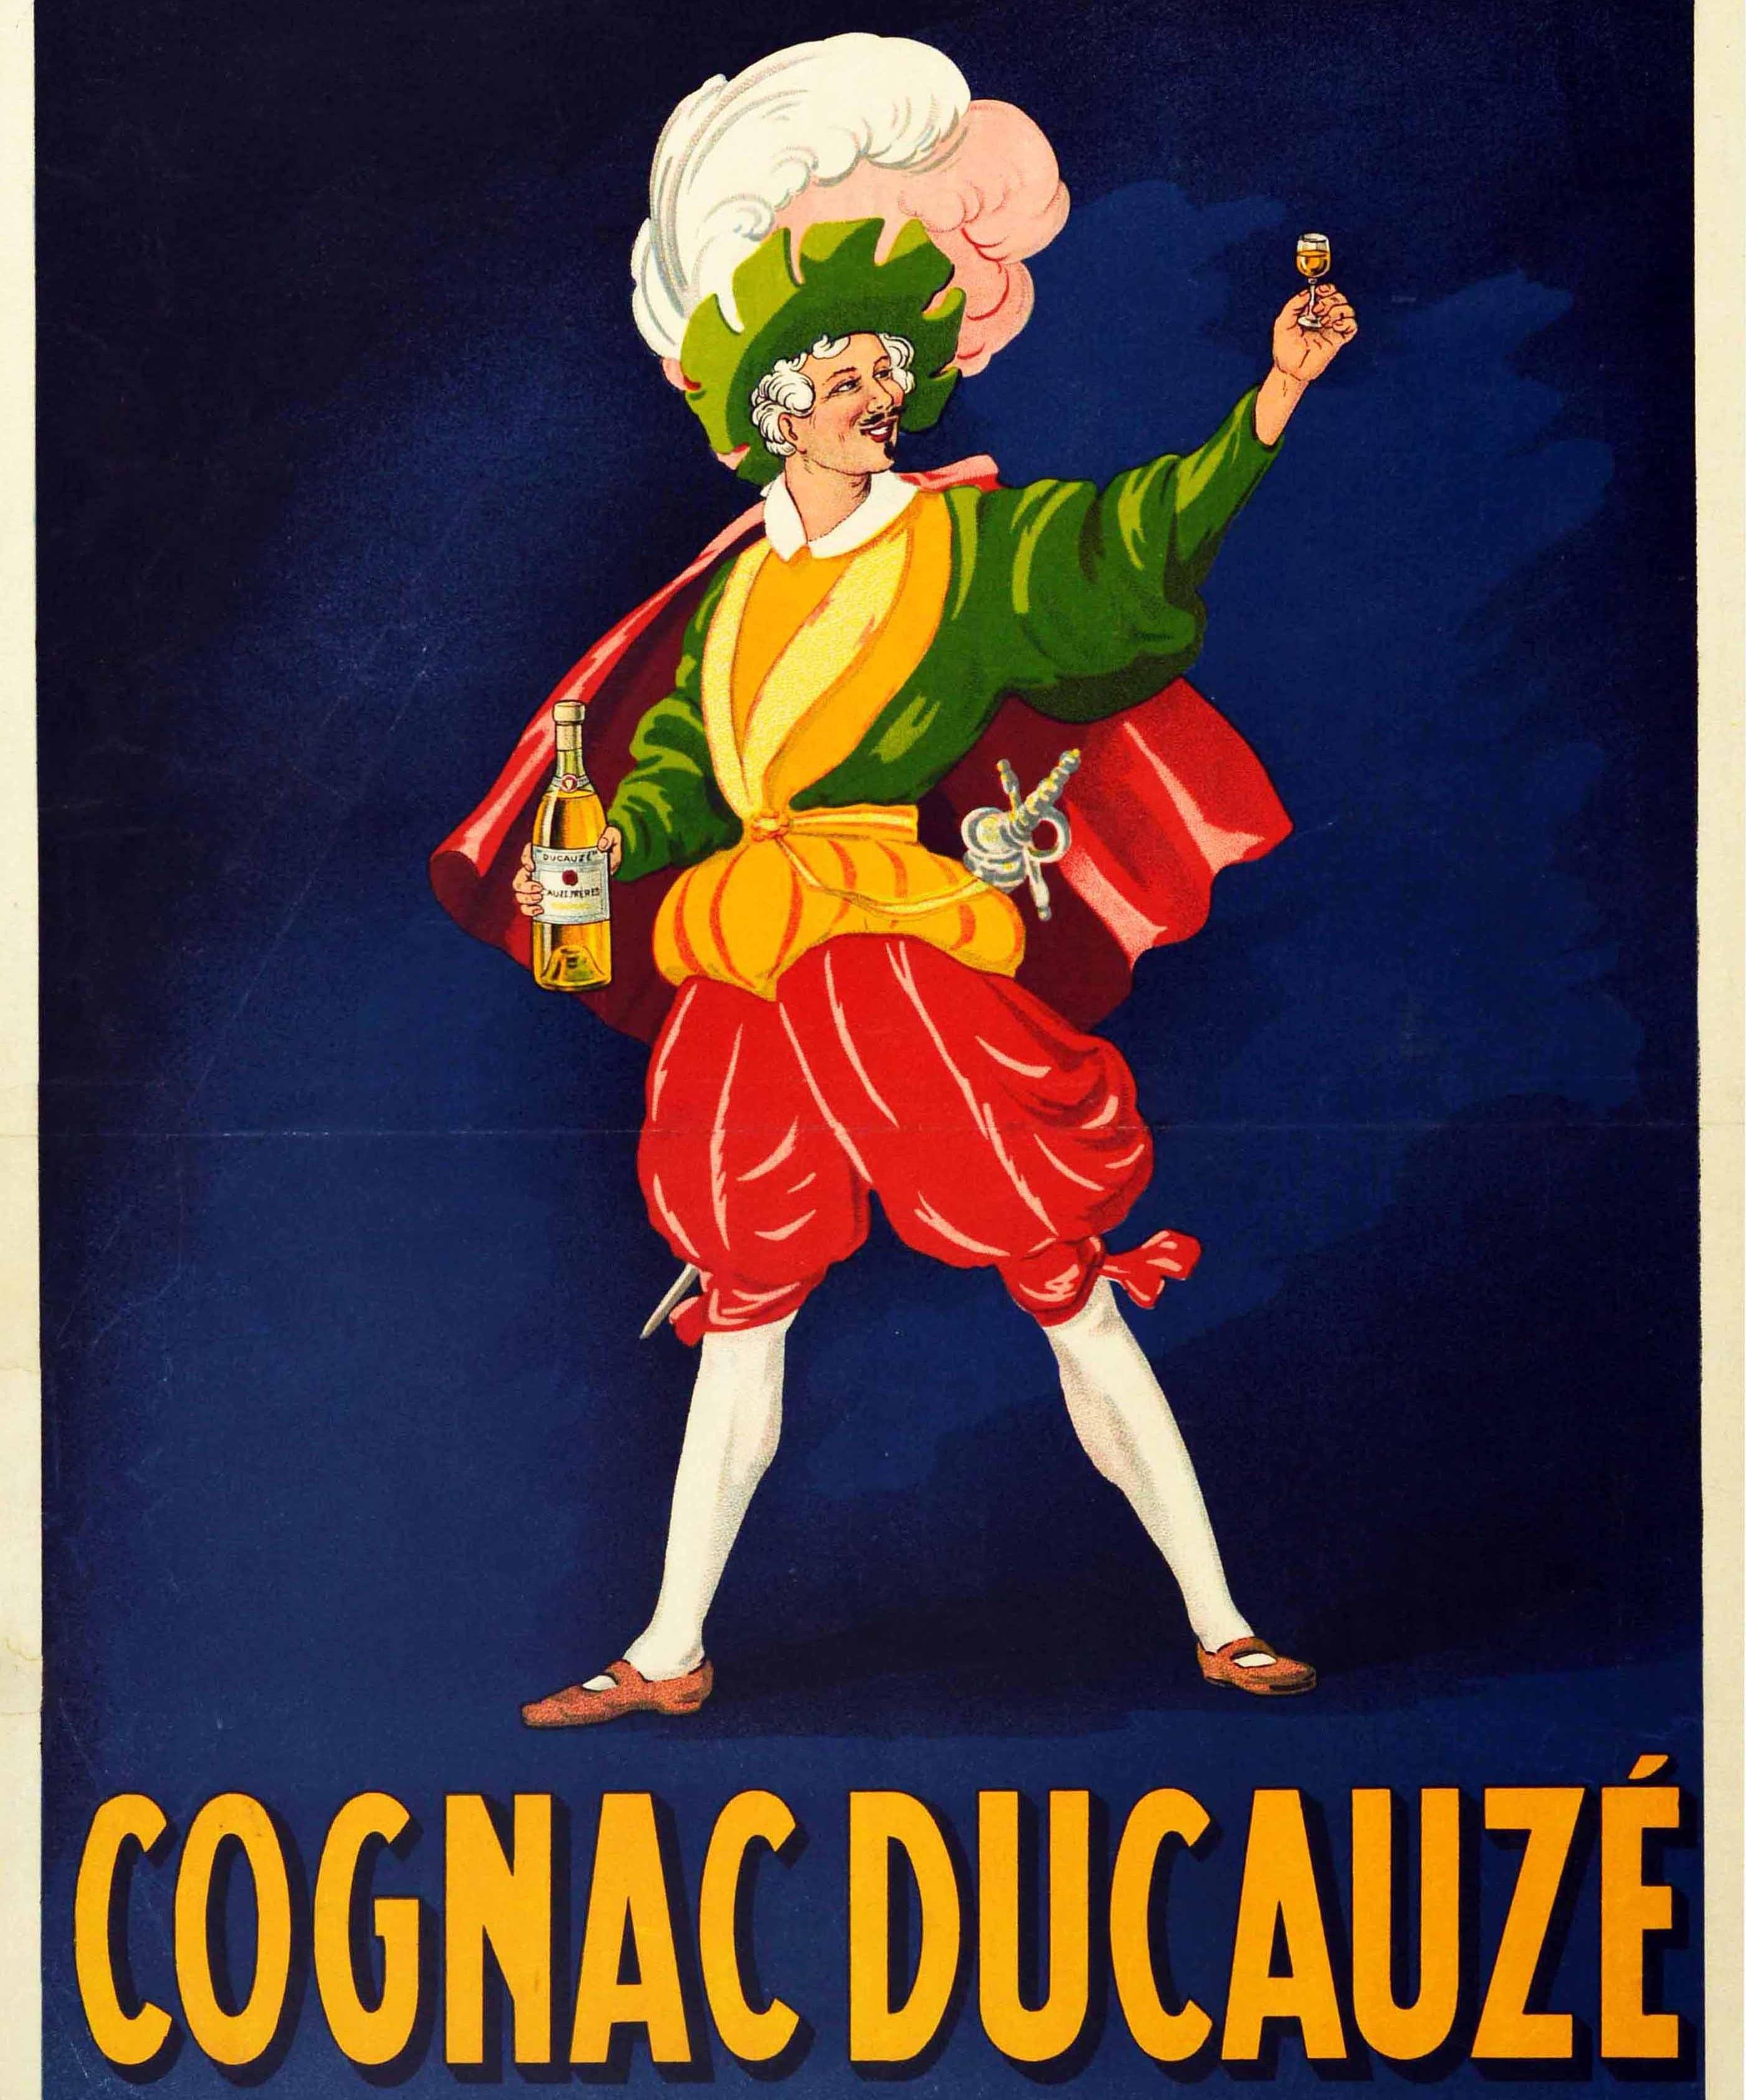 Original antike Getränk Werbung Plakat für Cognac Ducauze Fama A Base De Calidad / Fame Based On Quality mit einem lebendigen und Spaß Design eines lächelnden Mannes in Piraten oder Musketier-Stil Kleidung in einem grünen und gelben Jacke mit einem